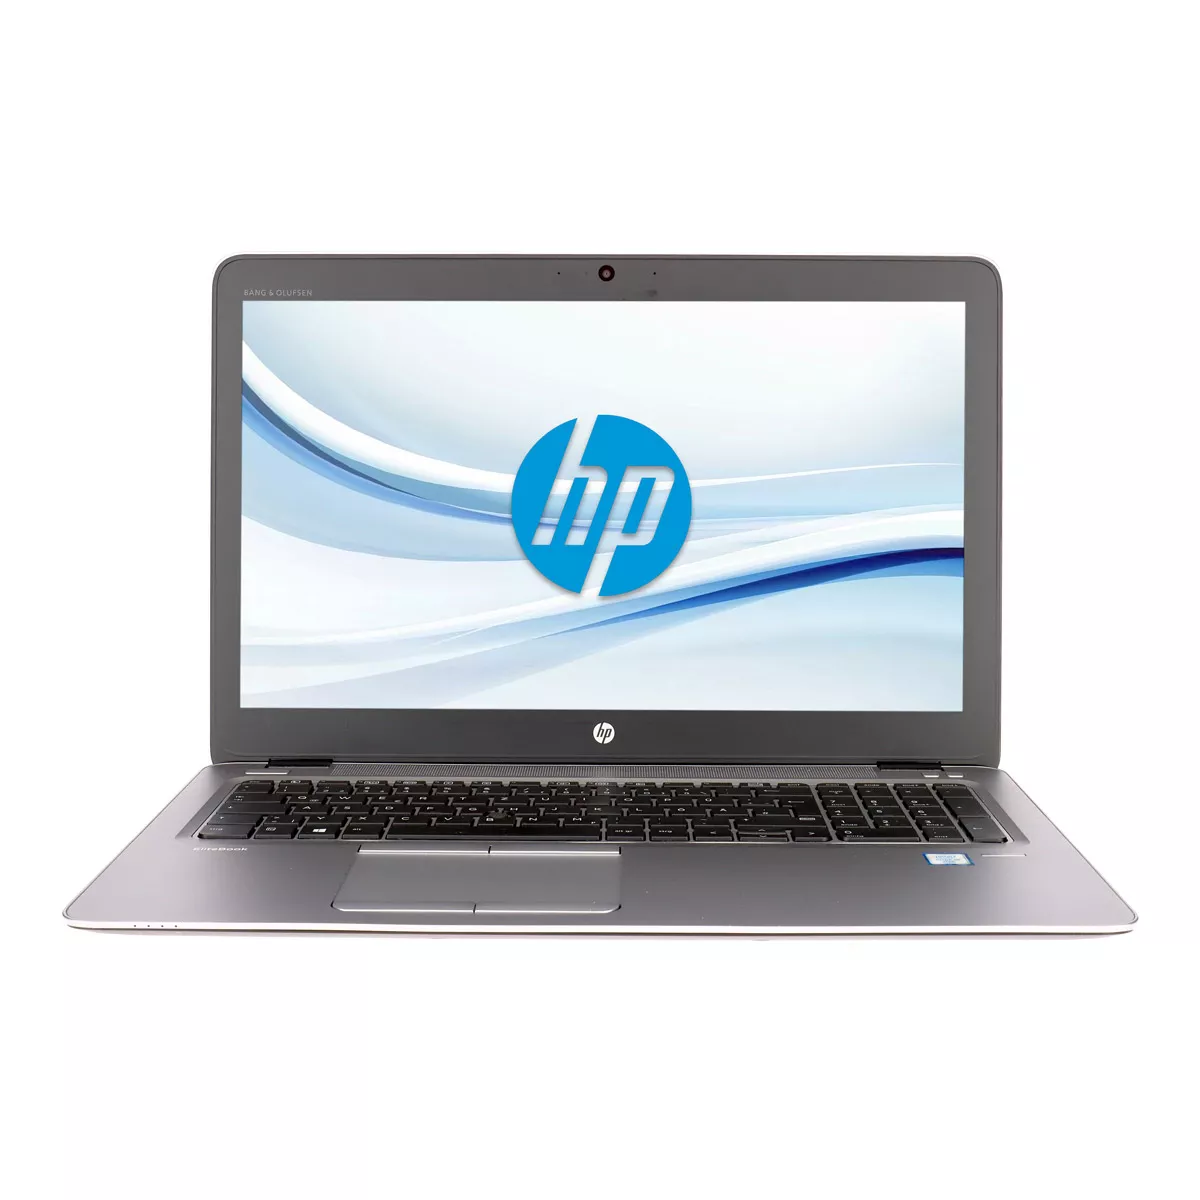 HP EliteBook 850 G3 Core i7 6600U Radeon R7 M265 16 GB 500 GB M.2 SSD Webcam A+